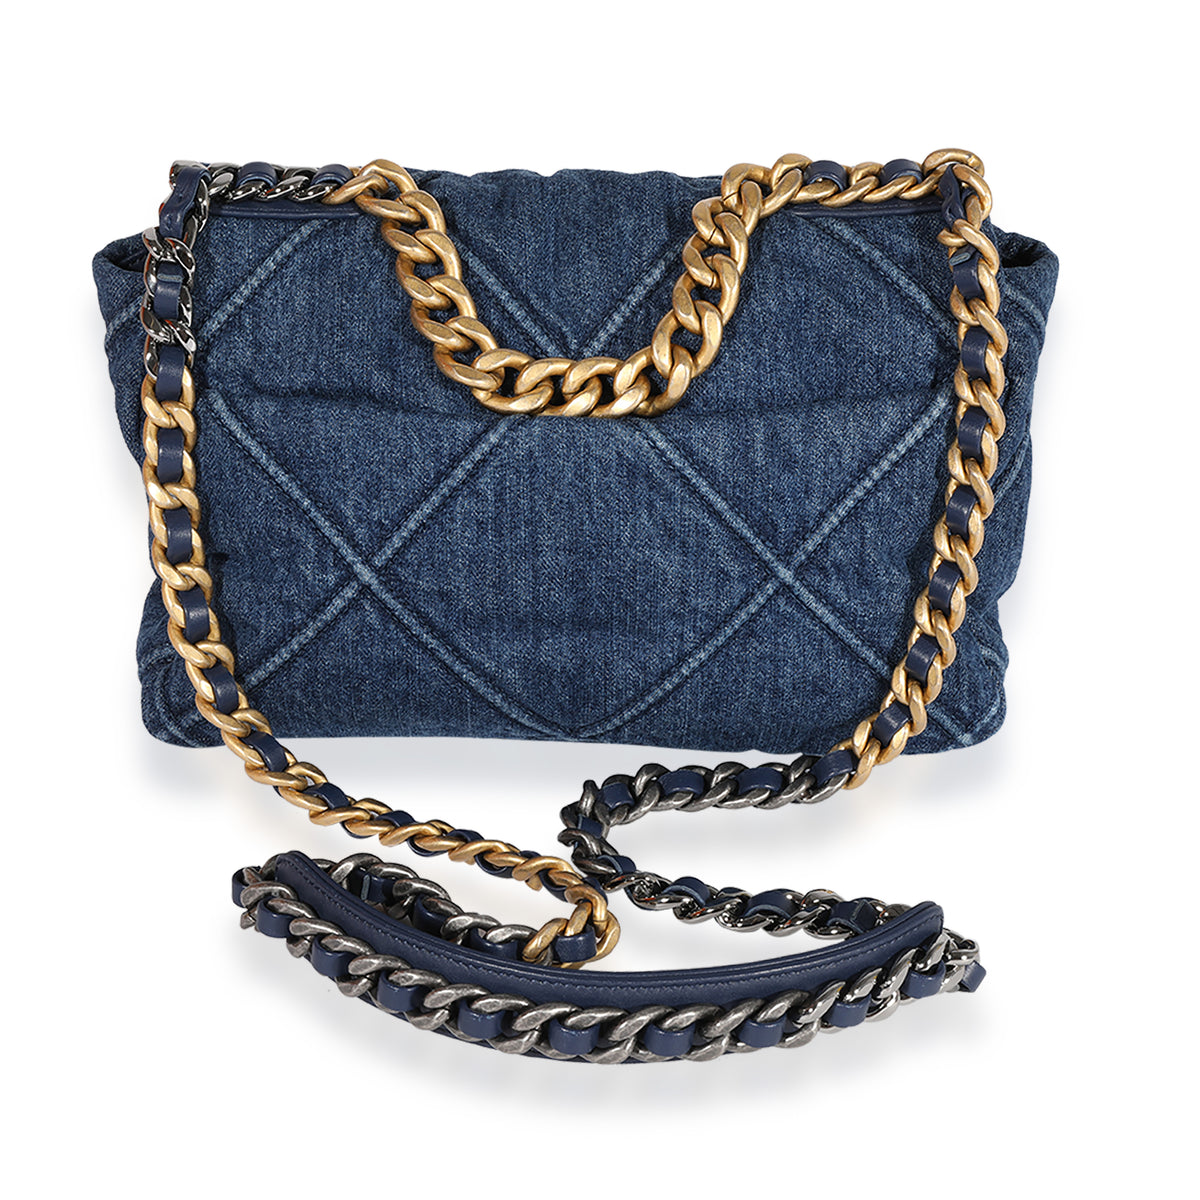 Chanel Blue Denim Quilted Medium Chanel 19 Bag, myGemma